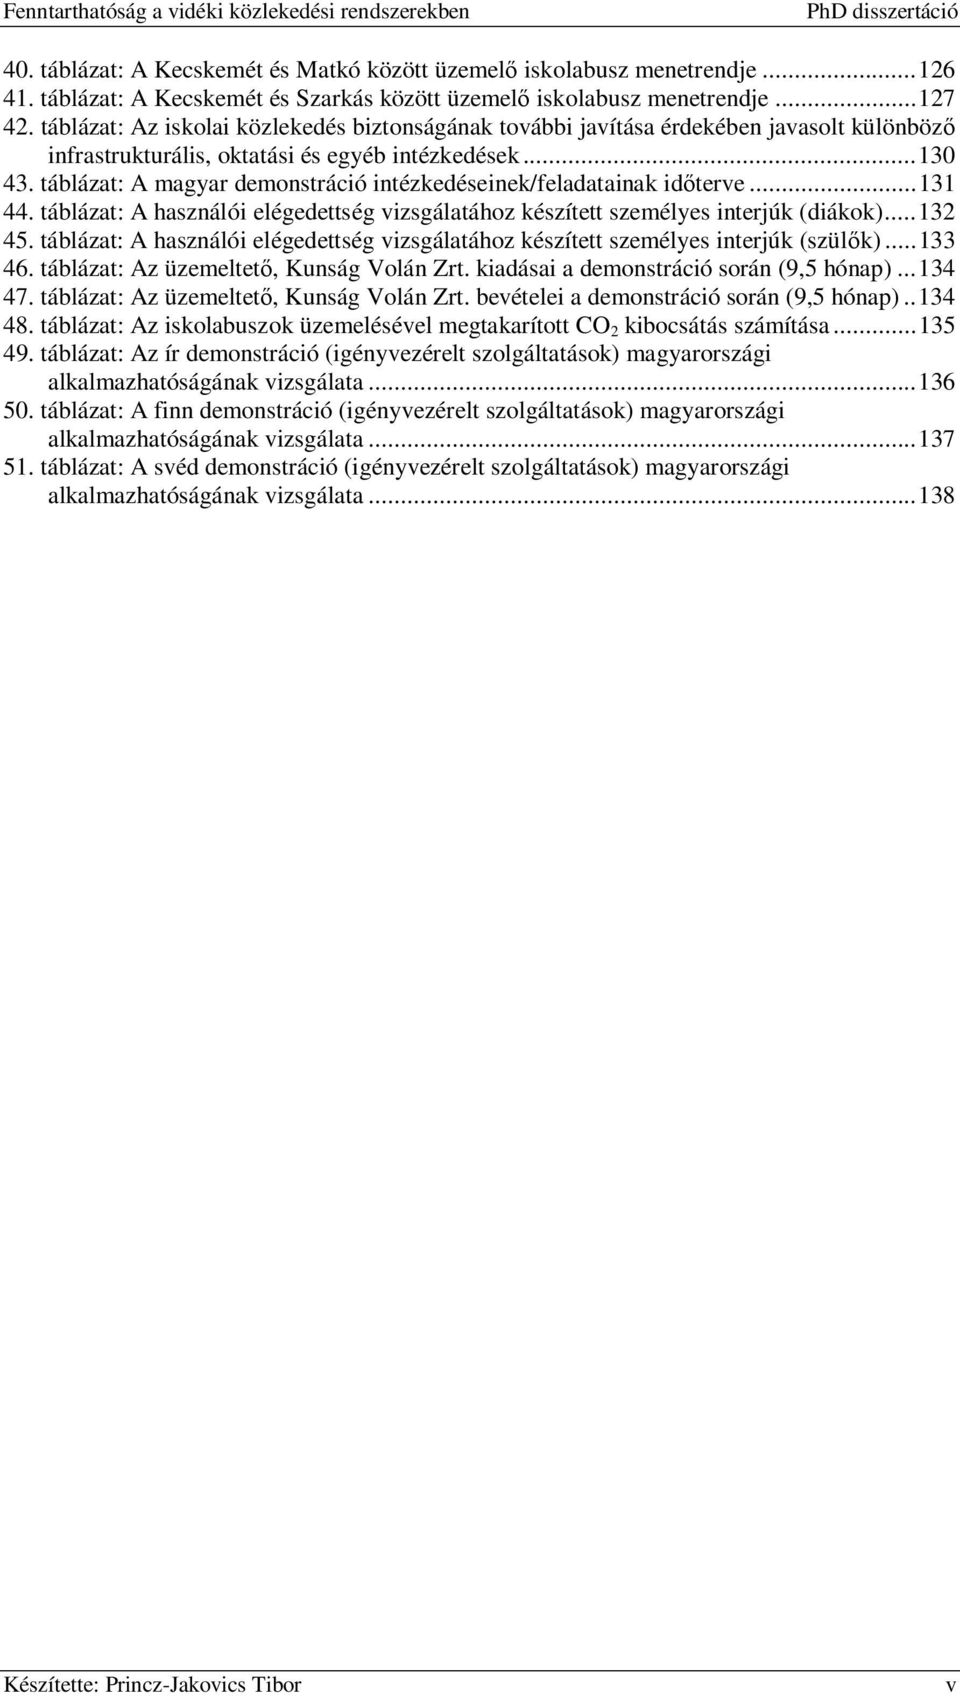 táblázat: A magyar demonstráció intézkedéseinek/feladatainak időterve...131 44. táblázat: A használói elégedettség vizsgálatához készített személyes interjúk (diákok)...132 45.